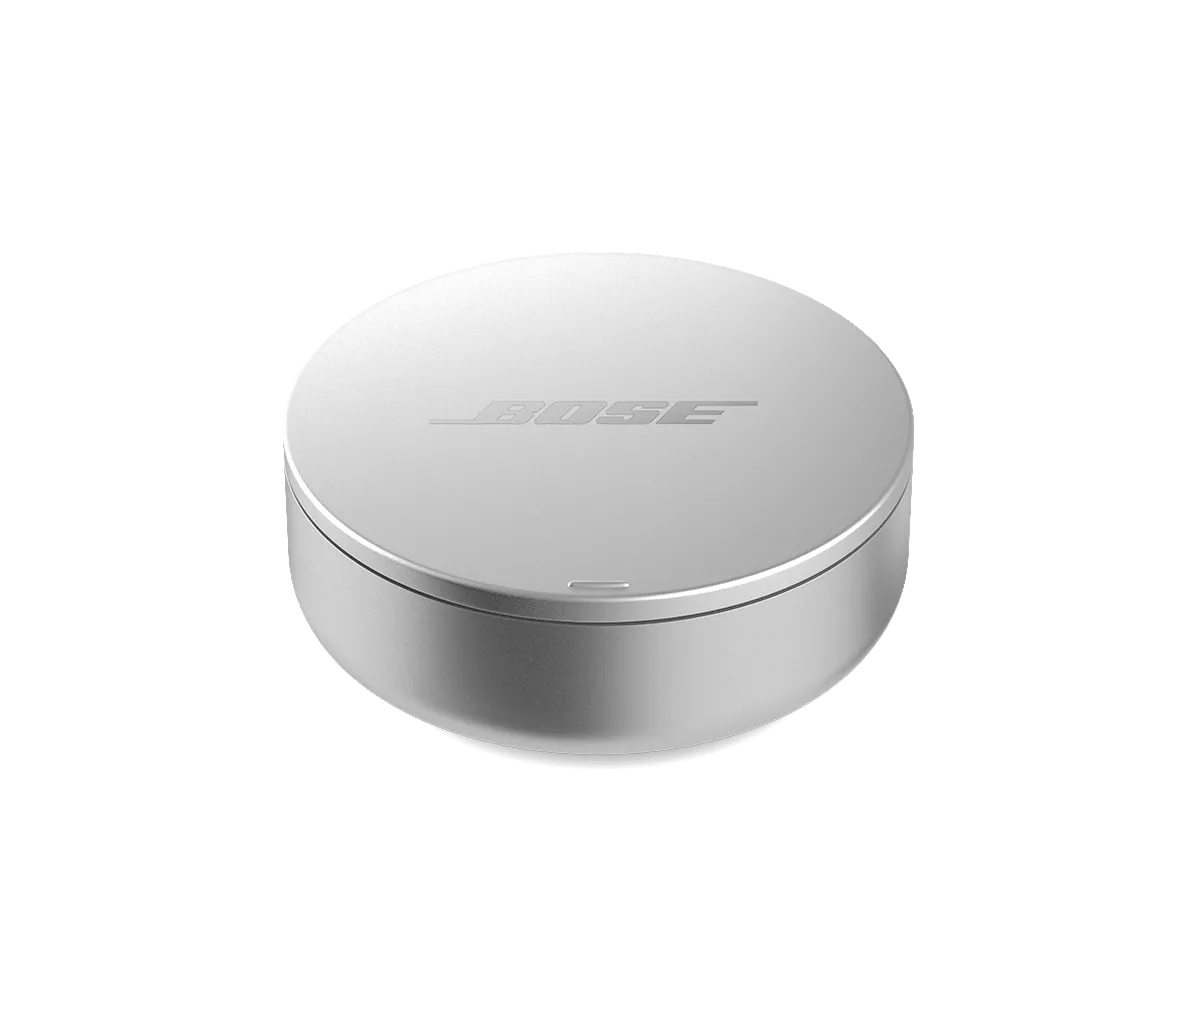 Bose noise-masking sleepbuds™ | Bose Support